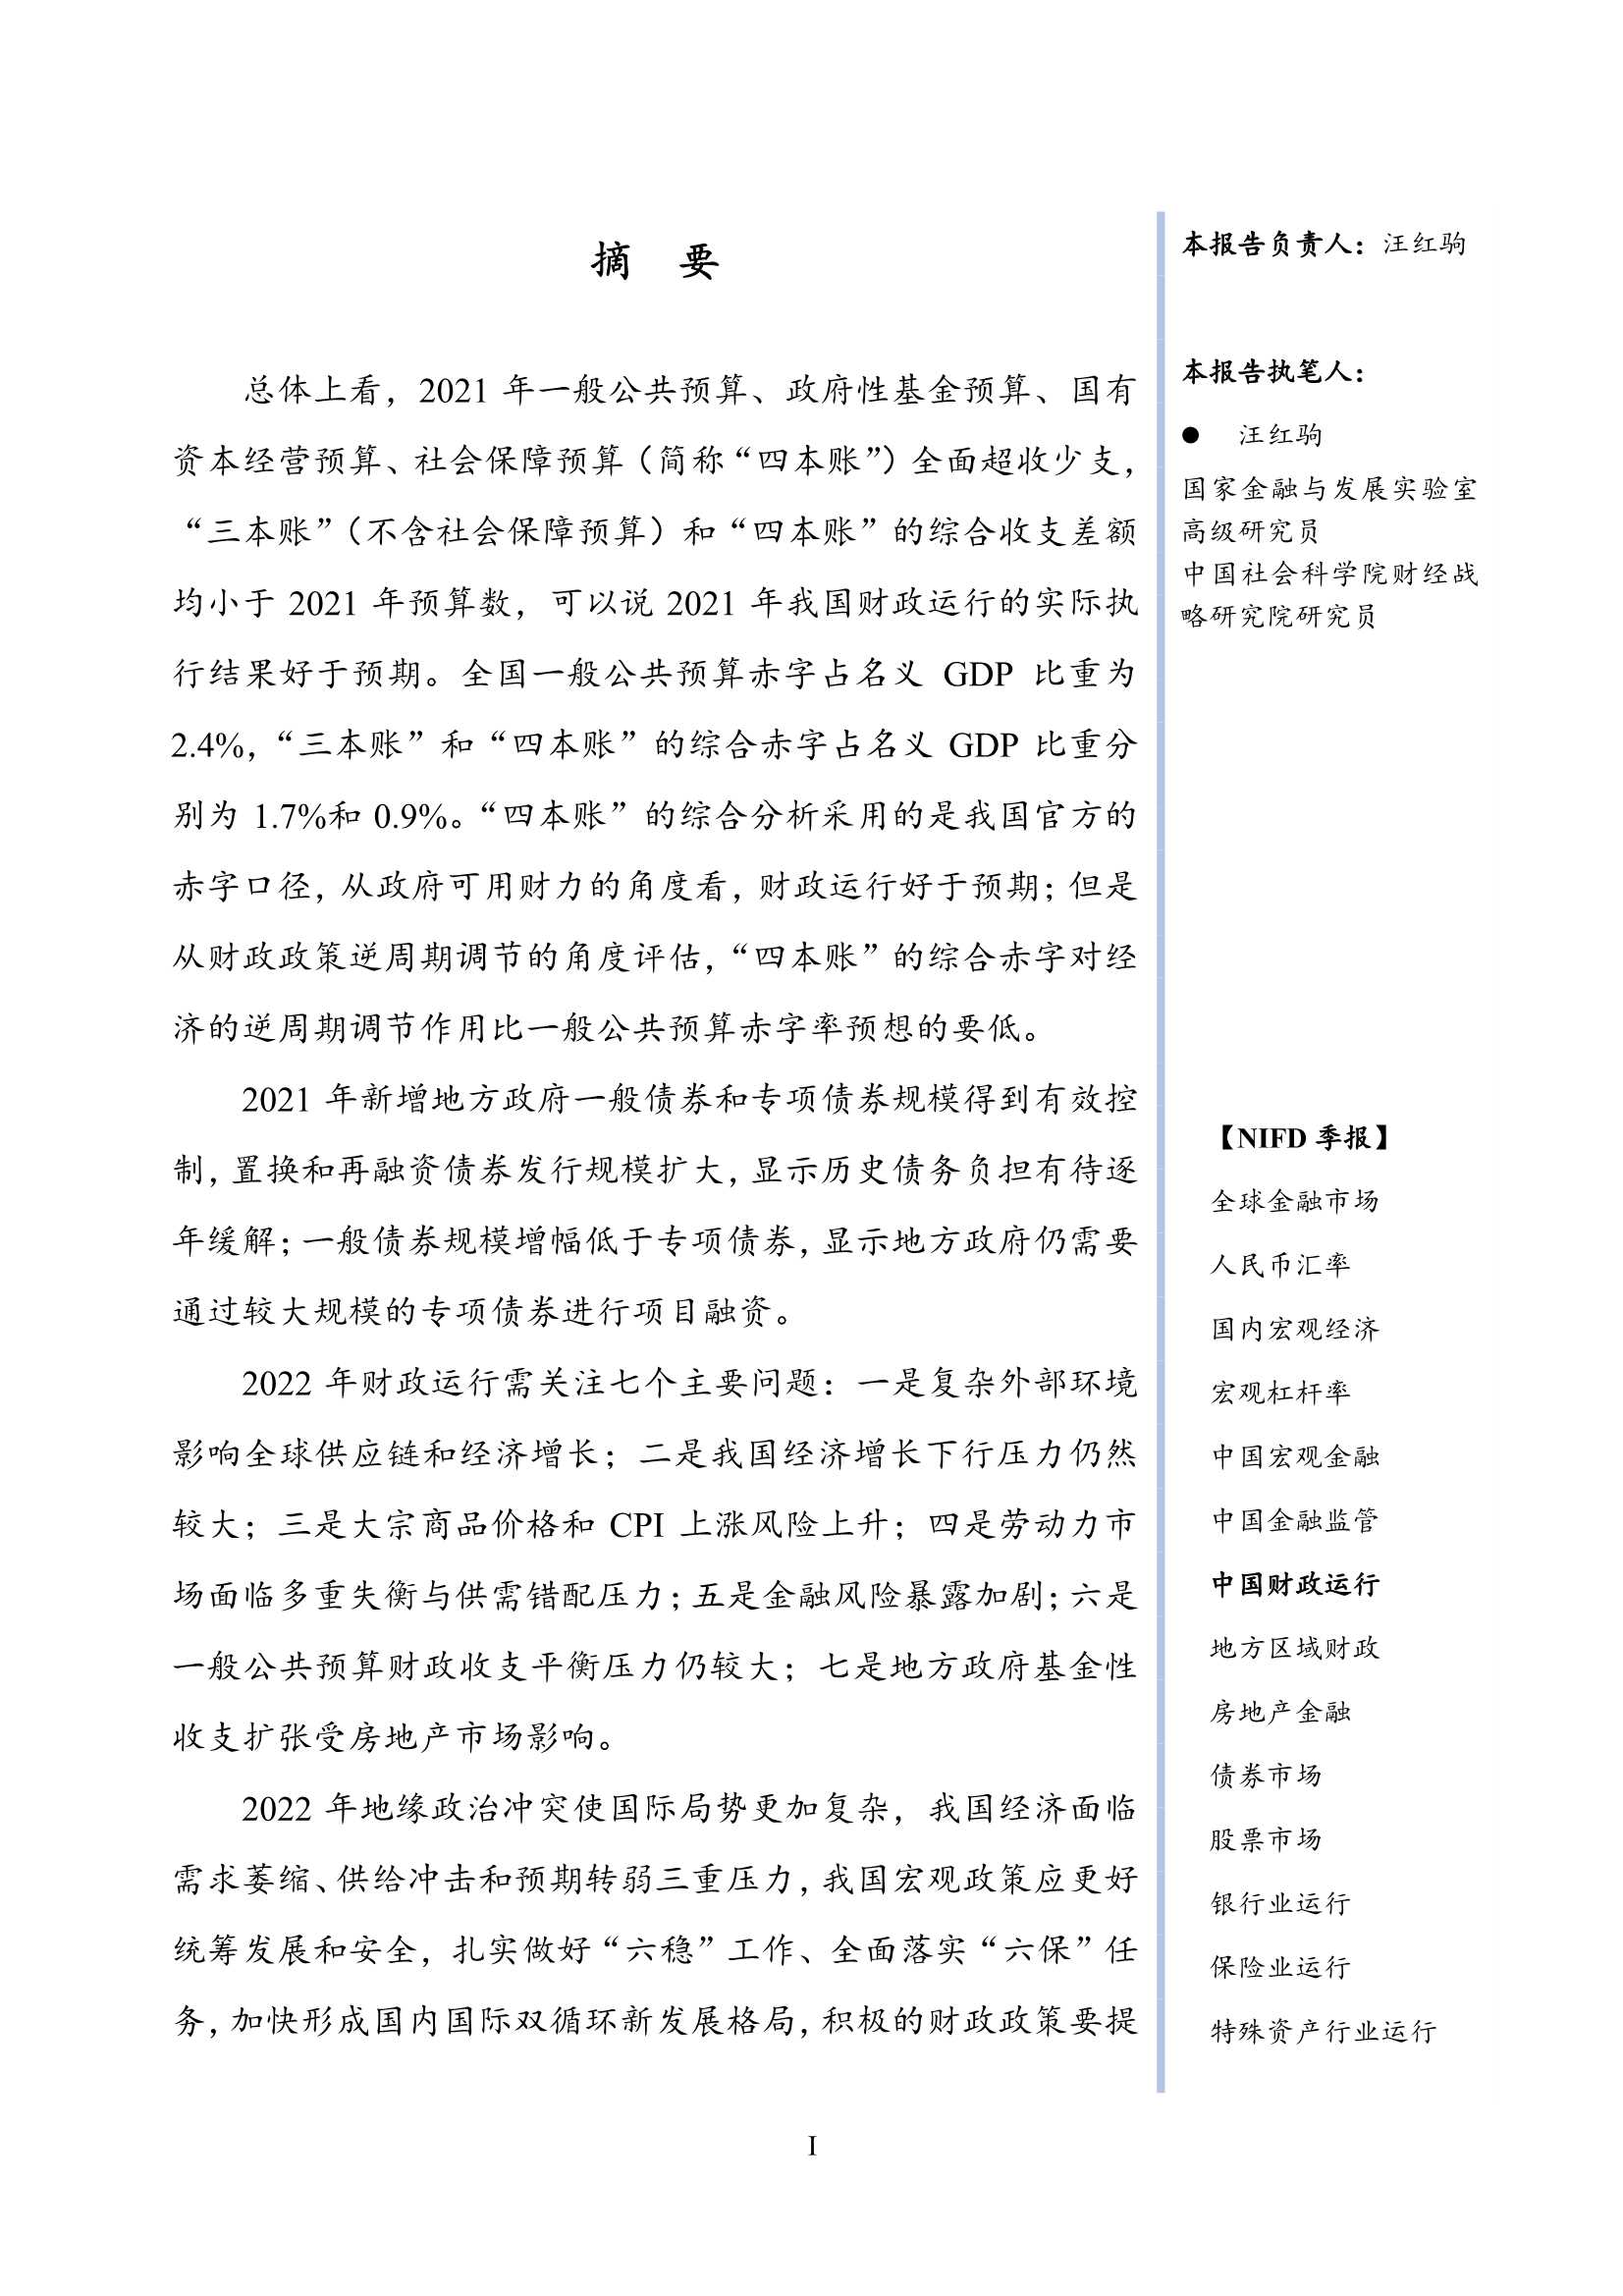 NIFD-2021年中国财政运行分析及2022年展望-2022.03-26页